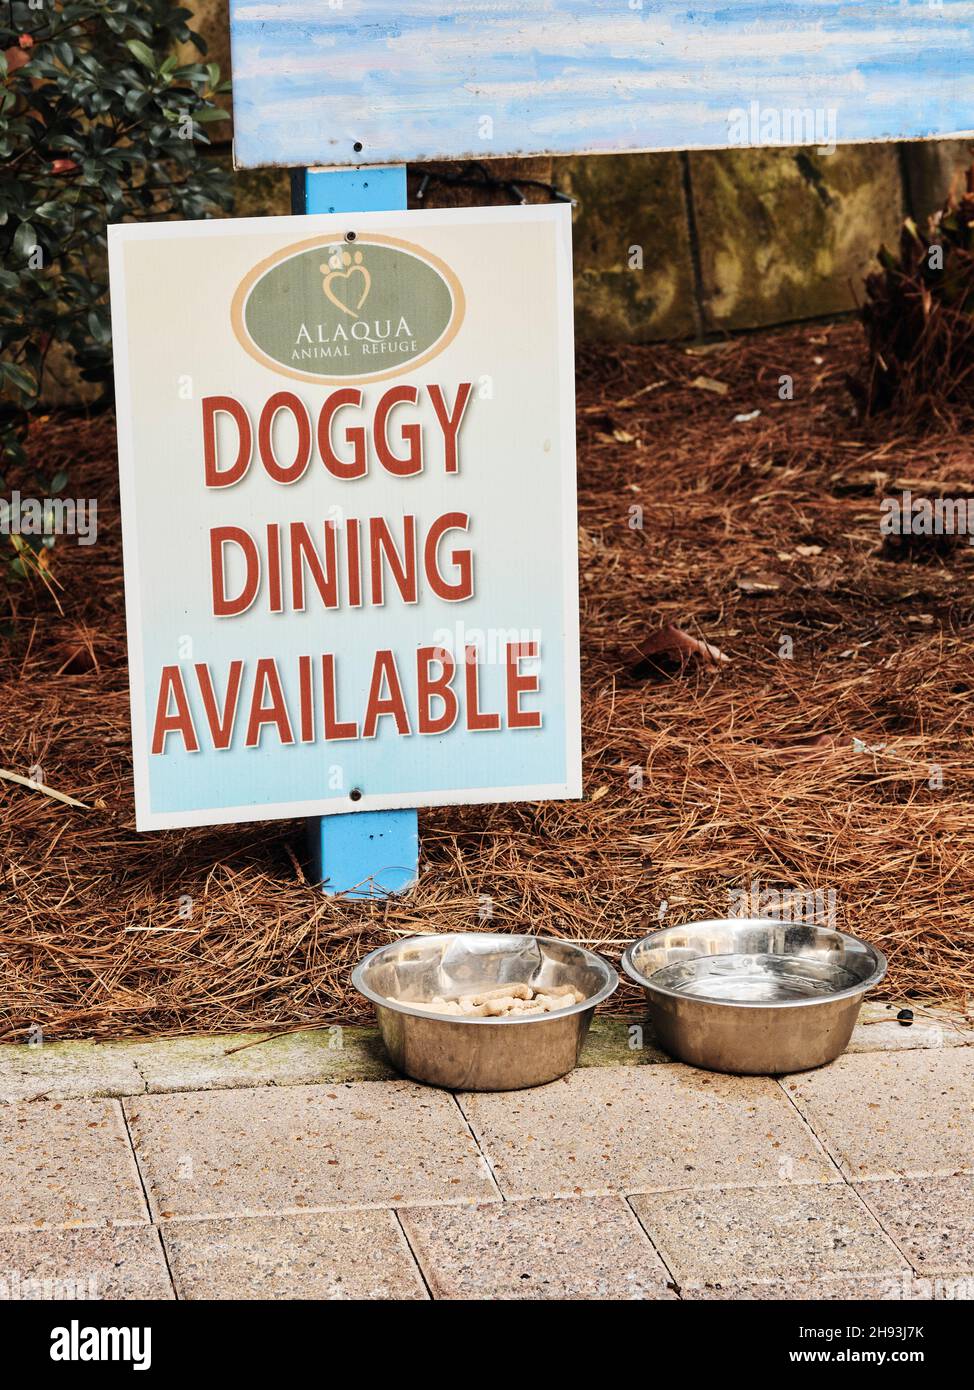 Restaurants pour chiens disponibles, panneau pour les animaux de compagnie et les chiens avec un chien, une friandise bown et un bol d'eau dans un restaurant à destin, Floride, États-Unis. Banque D'Images